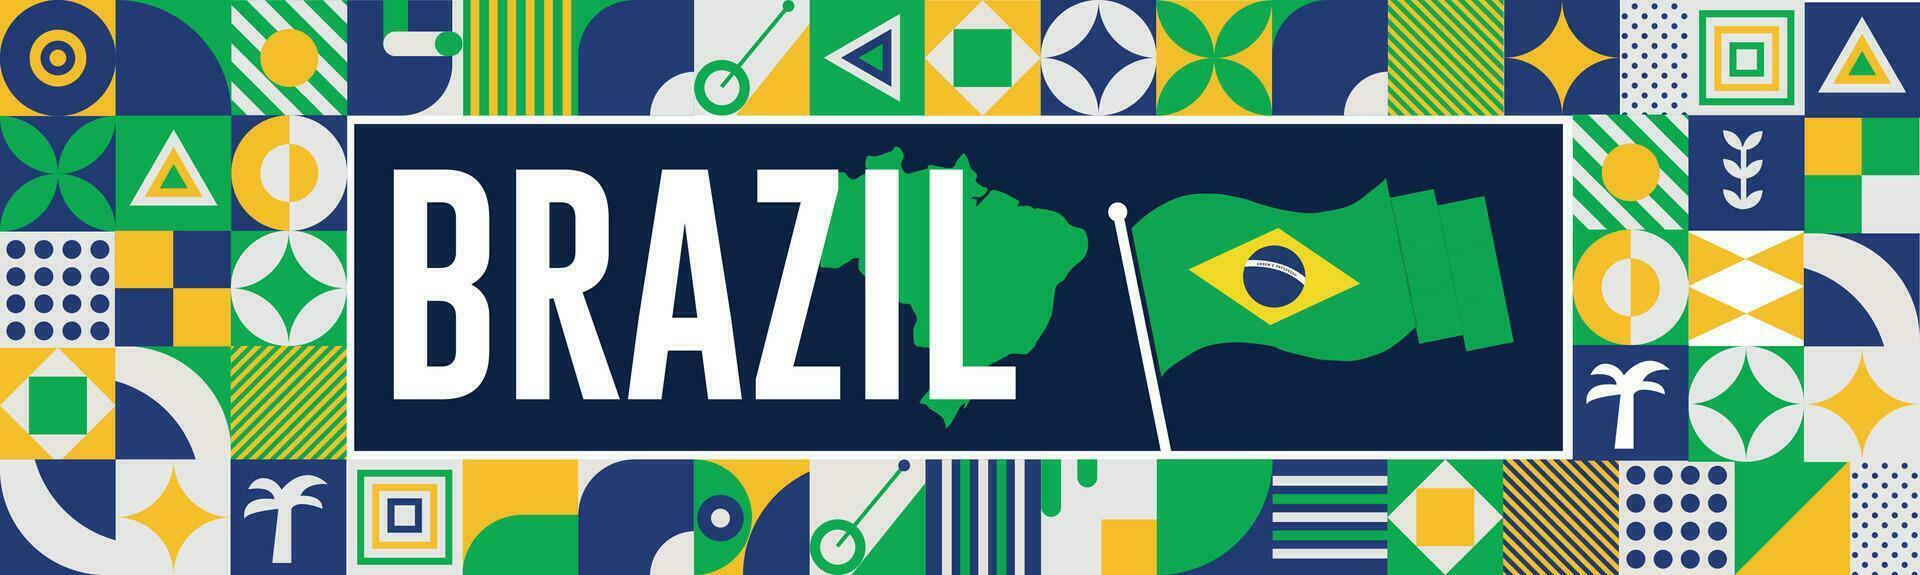 Brazilië kaart en verheven vuisten. nationaal dag of onafhankelijkheid dag ontwerp voor Brazilië viering. modern retro ontwerp met abstract pictogrammen. vector illustratie.